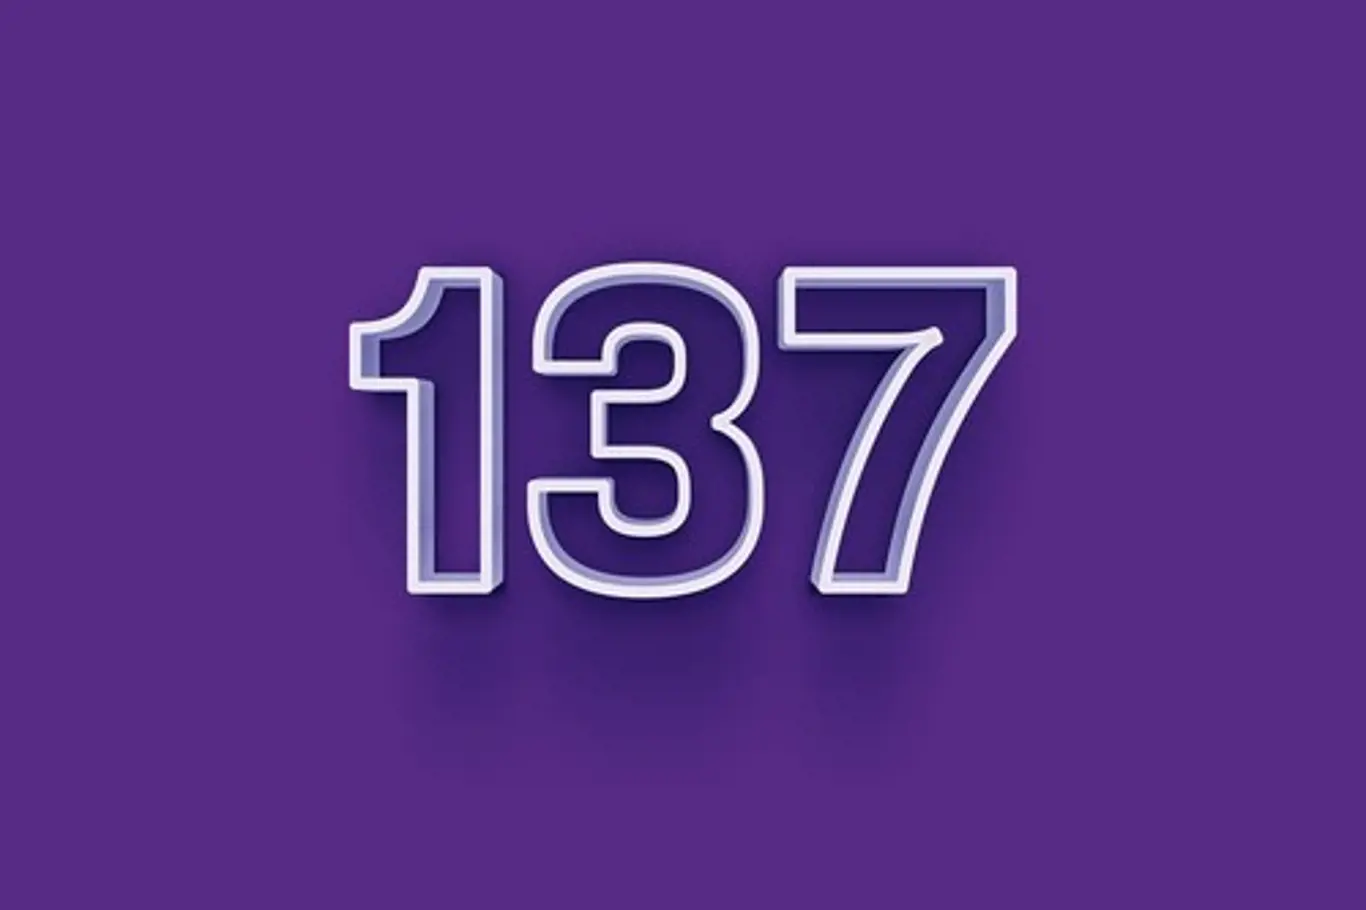 Tajemné číslo 137 má být klíčem k podstatě vesmíru.